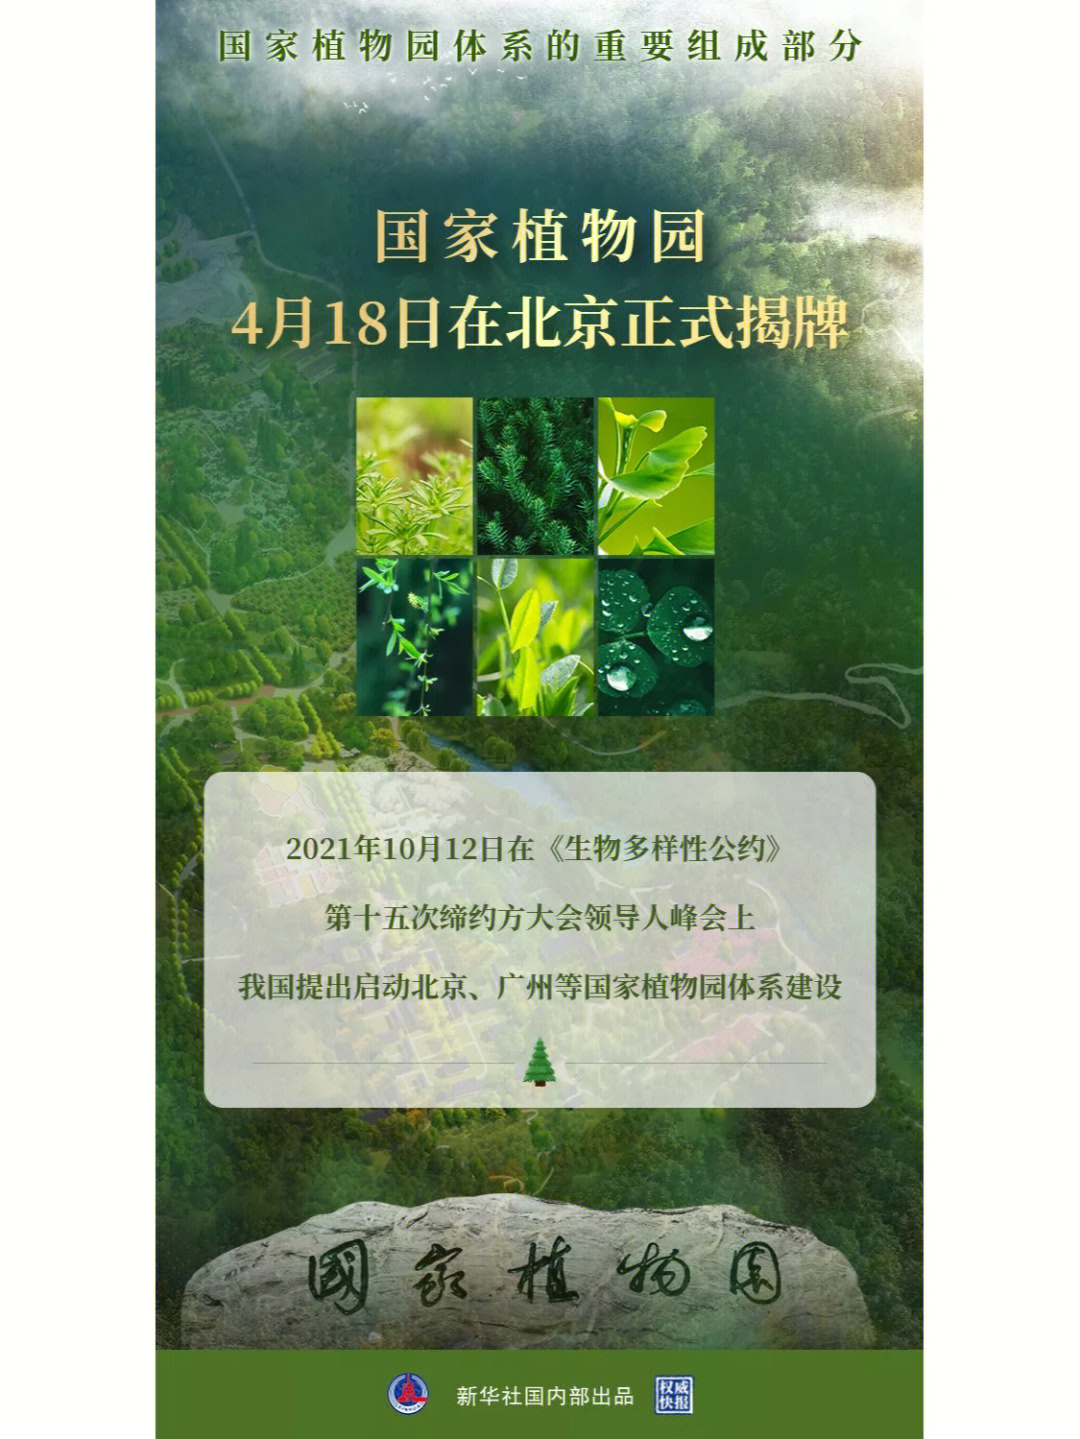 国家植物园18日在北京正式揭